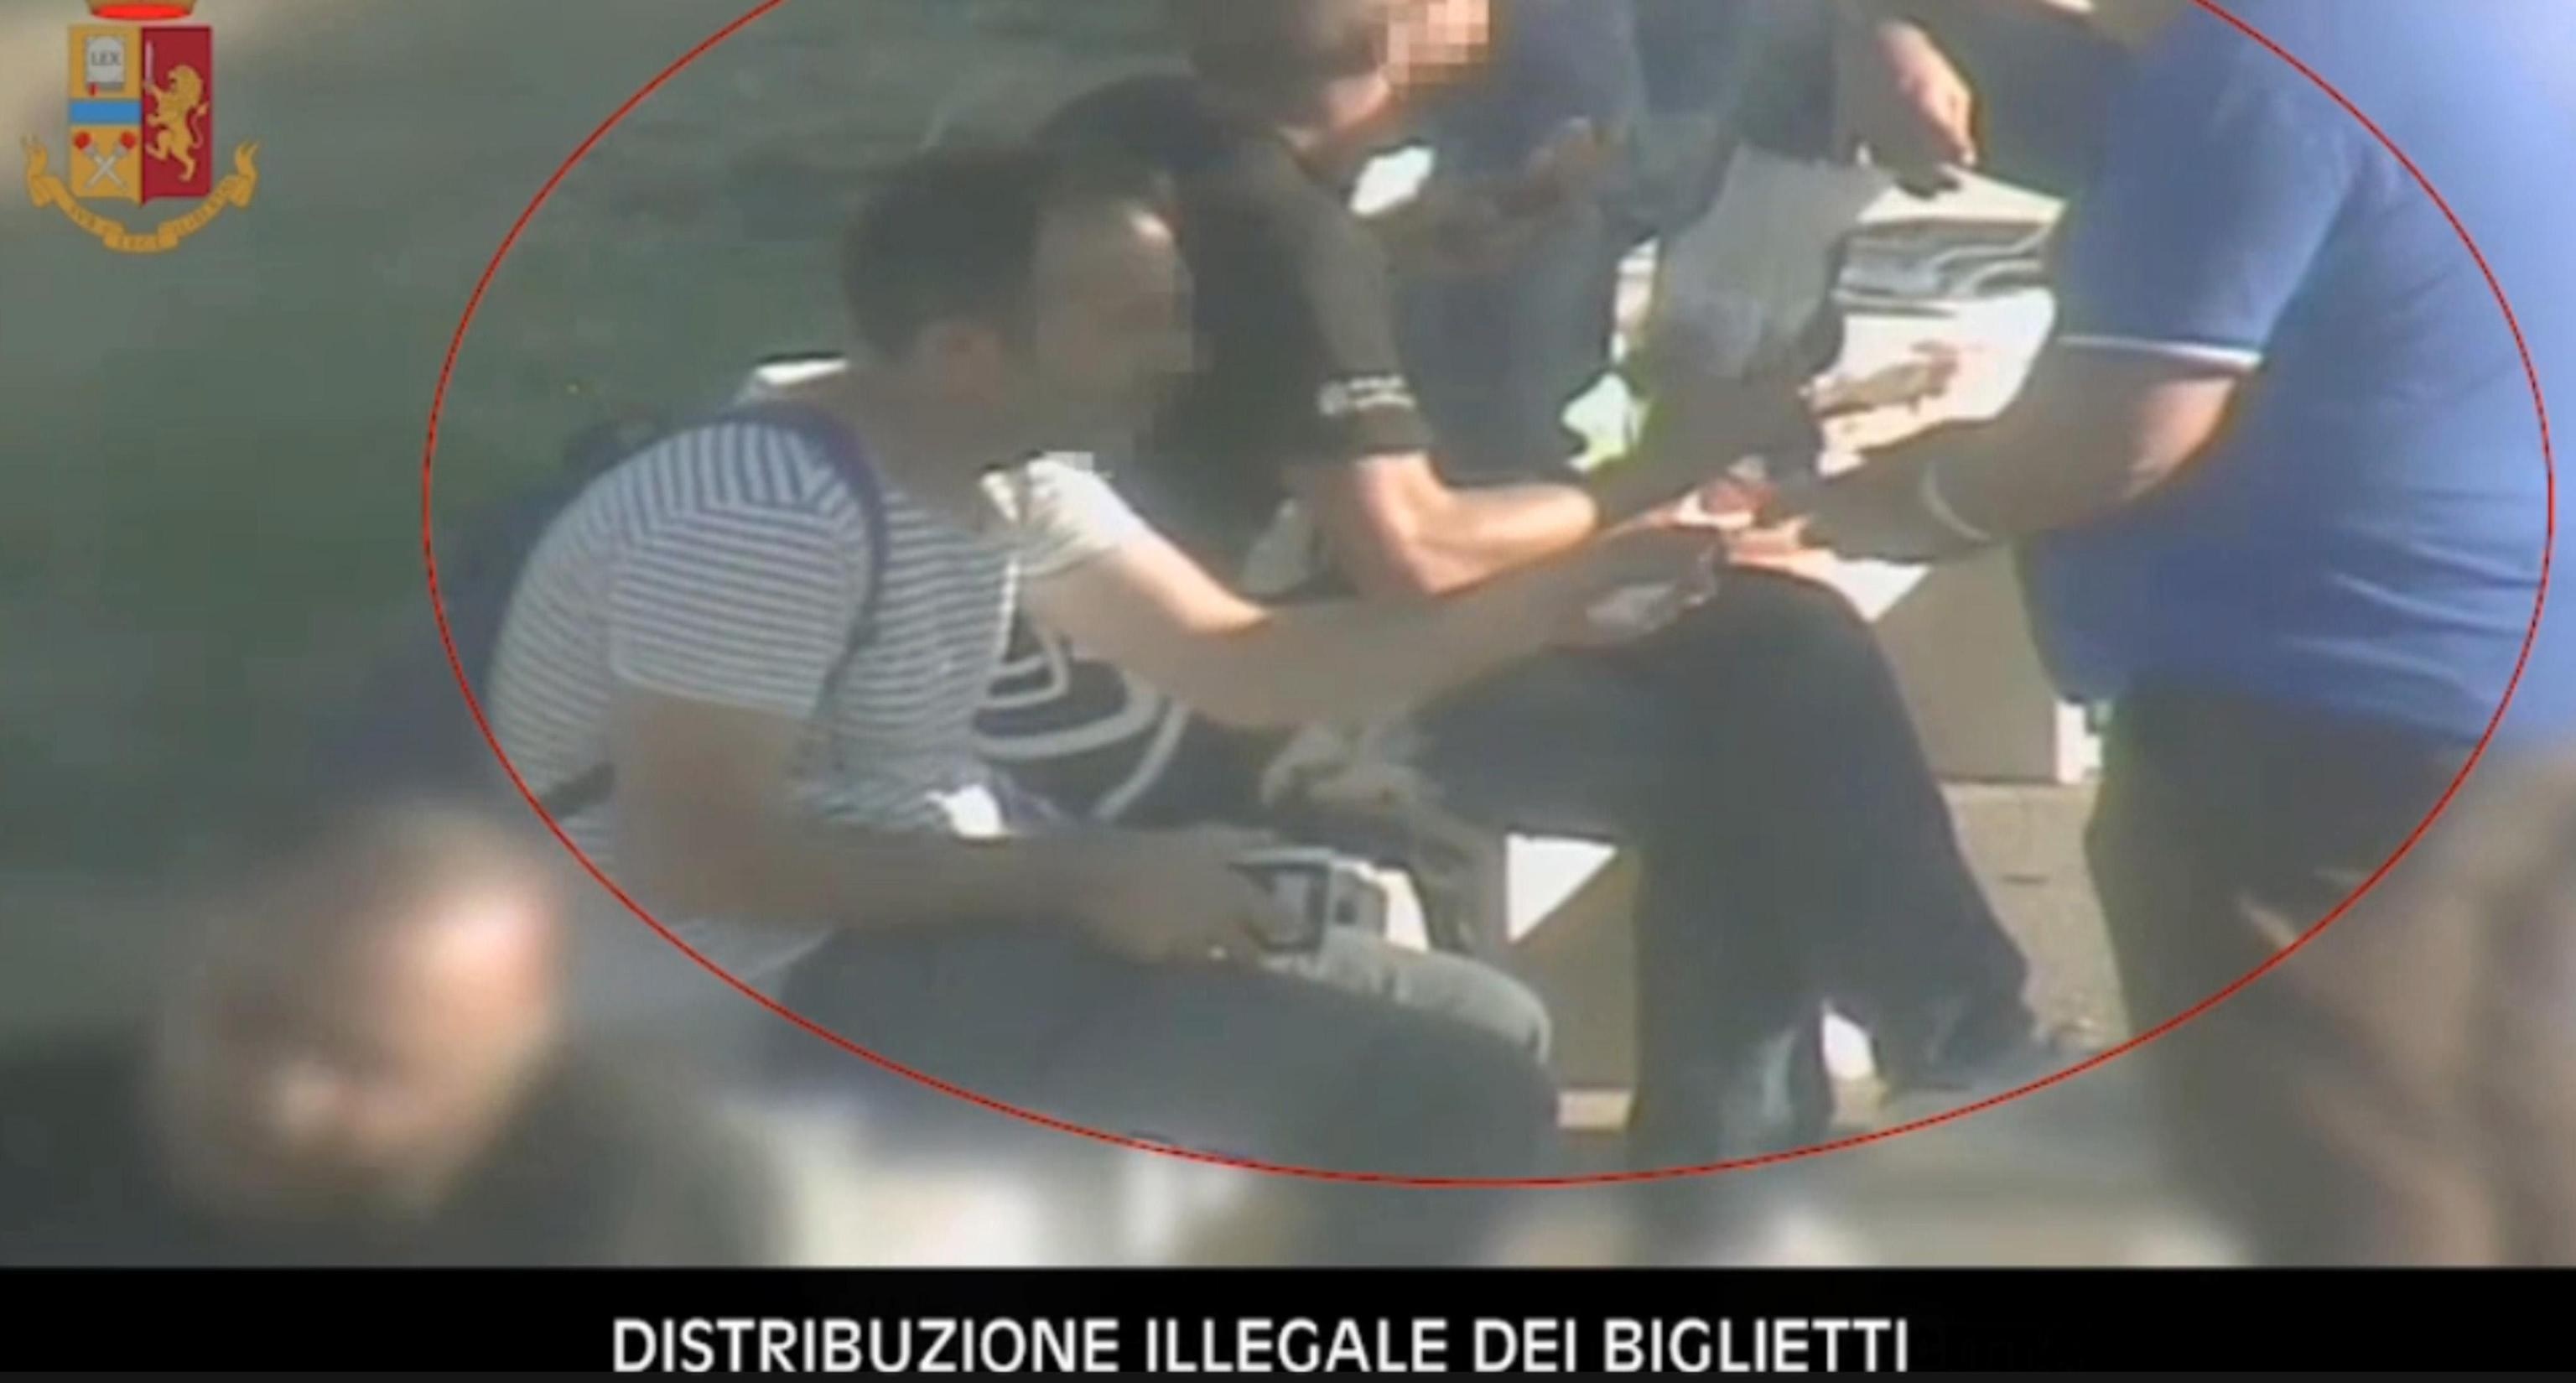 Uno dei fermi immagine diffusi dalla Polizia nell'ambito dell'indagine sui capi ultras della Juventus